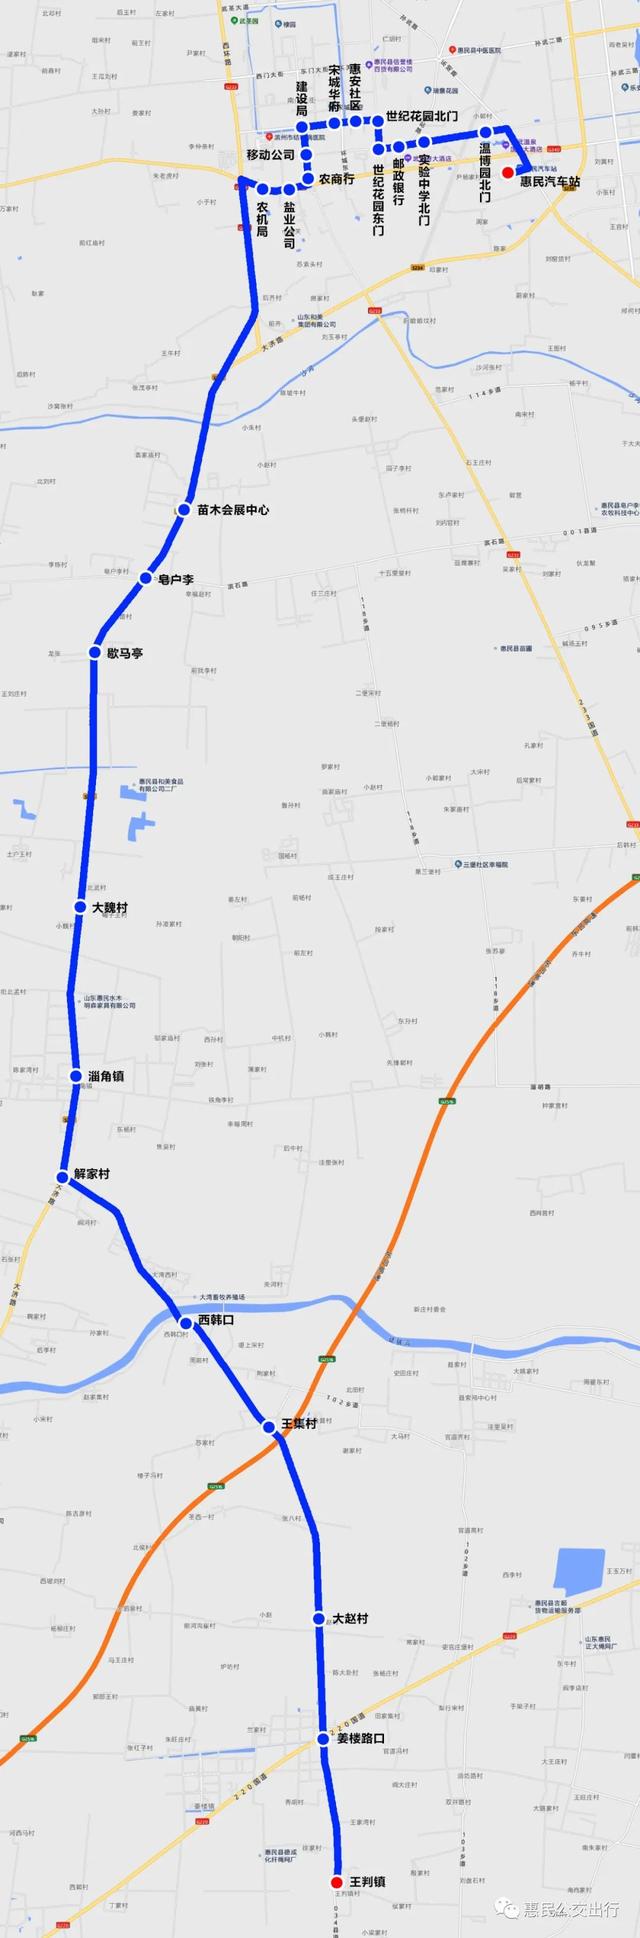 惠民县城乡公交H102路、H1021路、H108路恢复运营